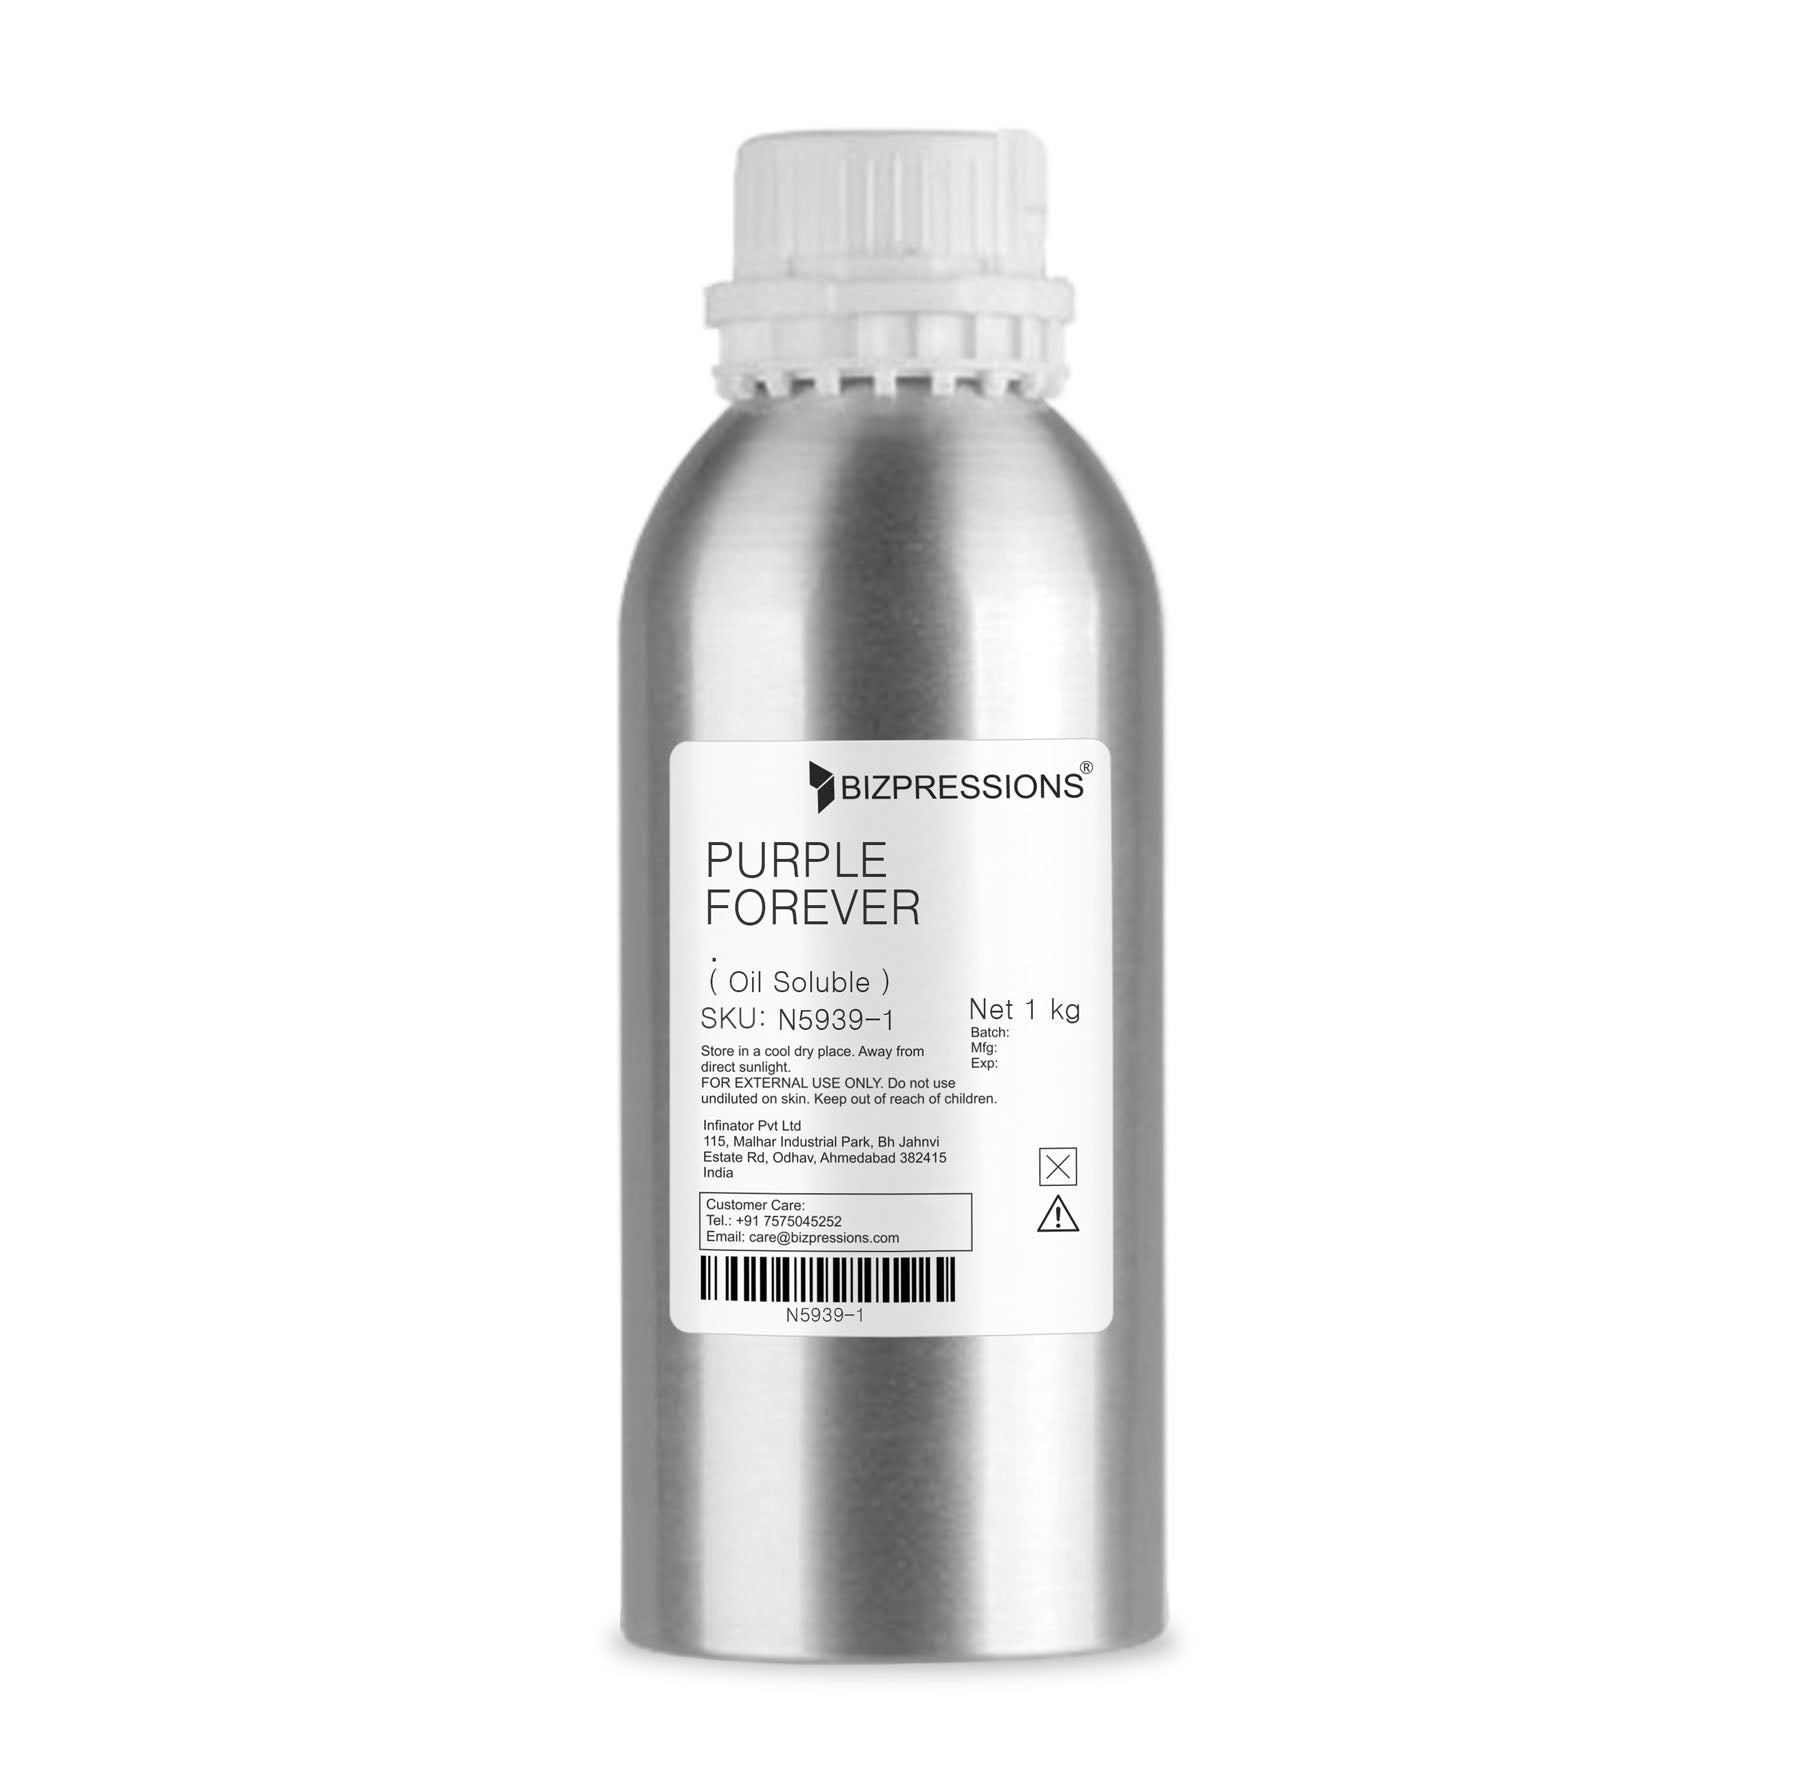 PURPLE FOREVER - Fragrance ( Oil Soluble ) - 1 kg